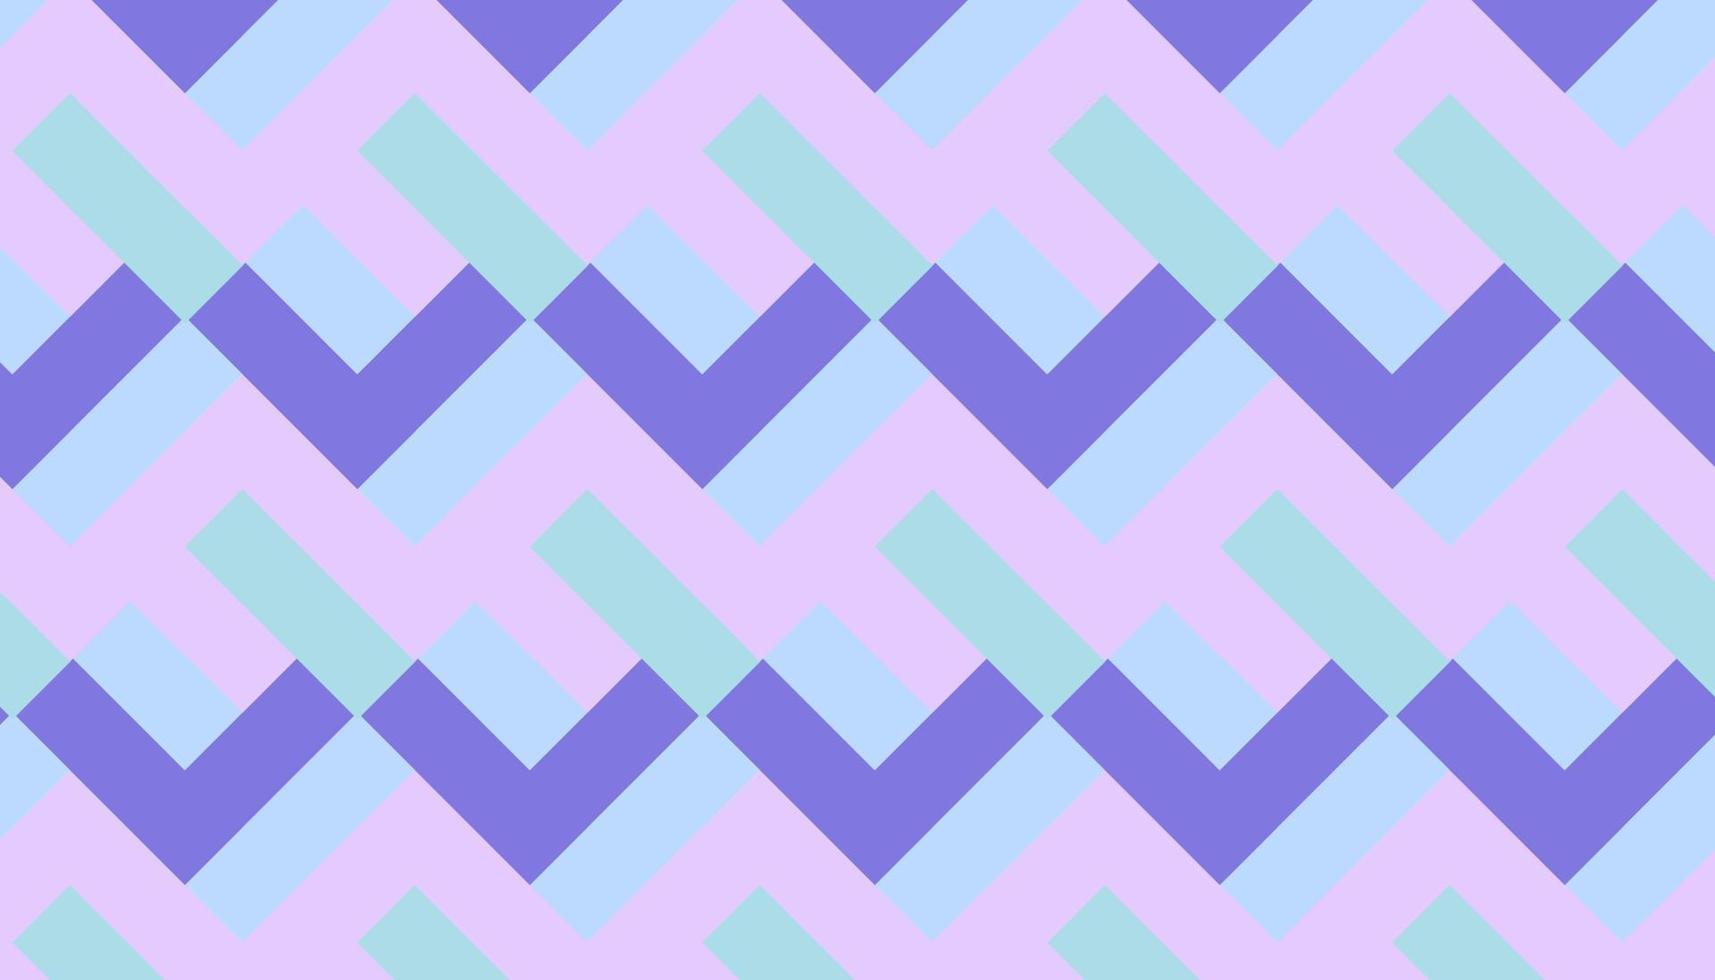 abstrakte geometrische zweifarbige violette und rosafarbene Formen nahtlos mit blauem Hintergrund vektor